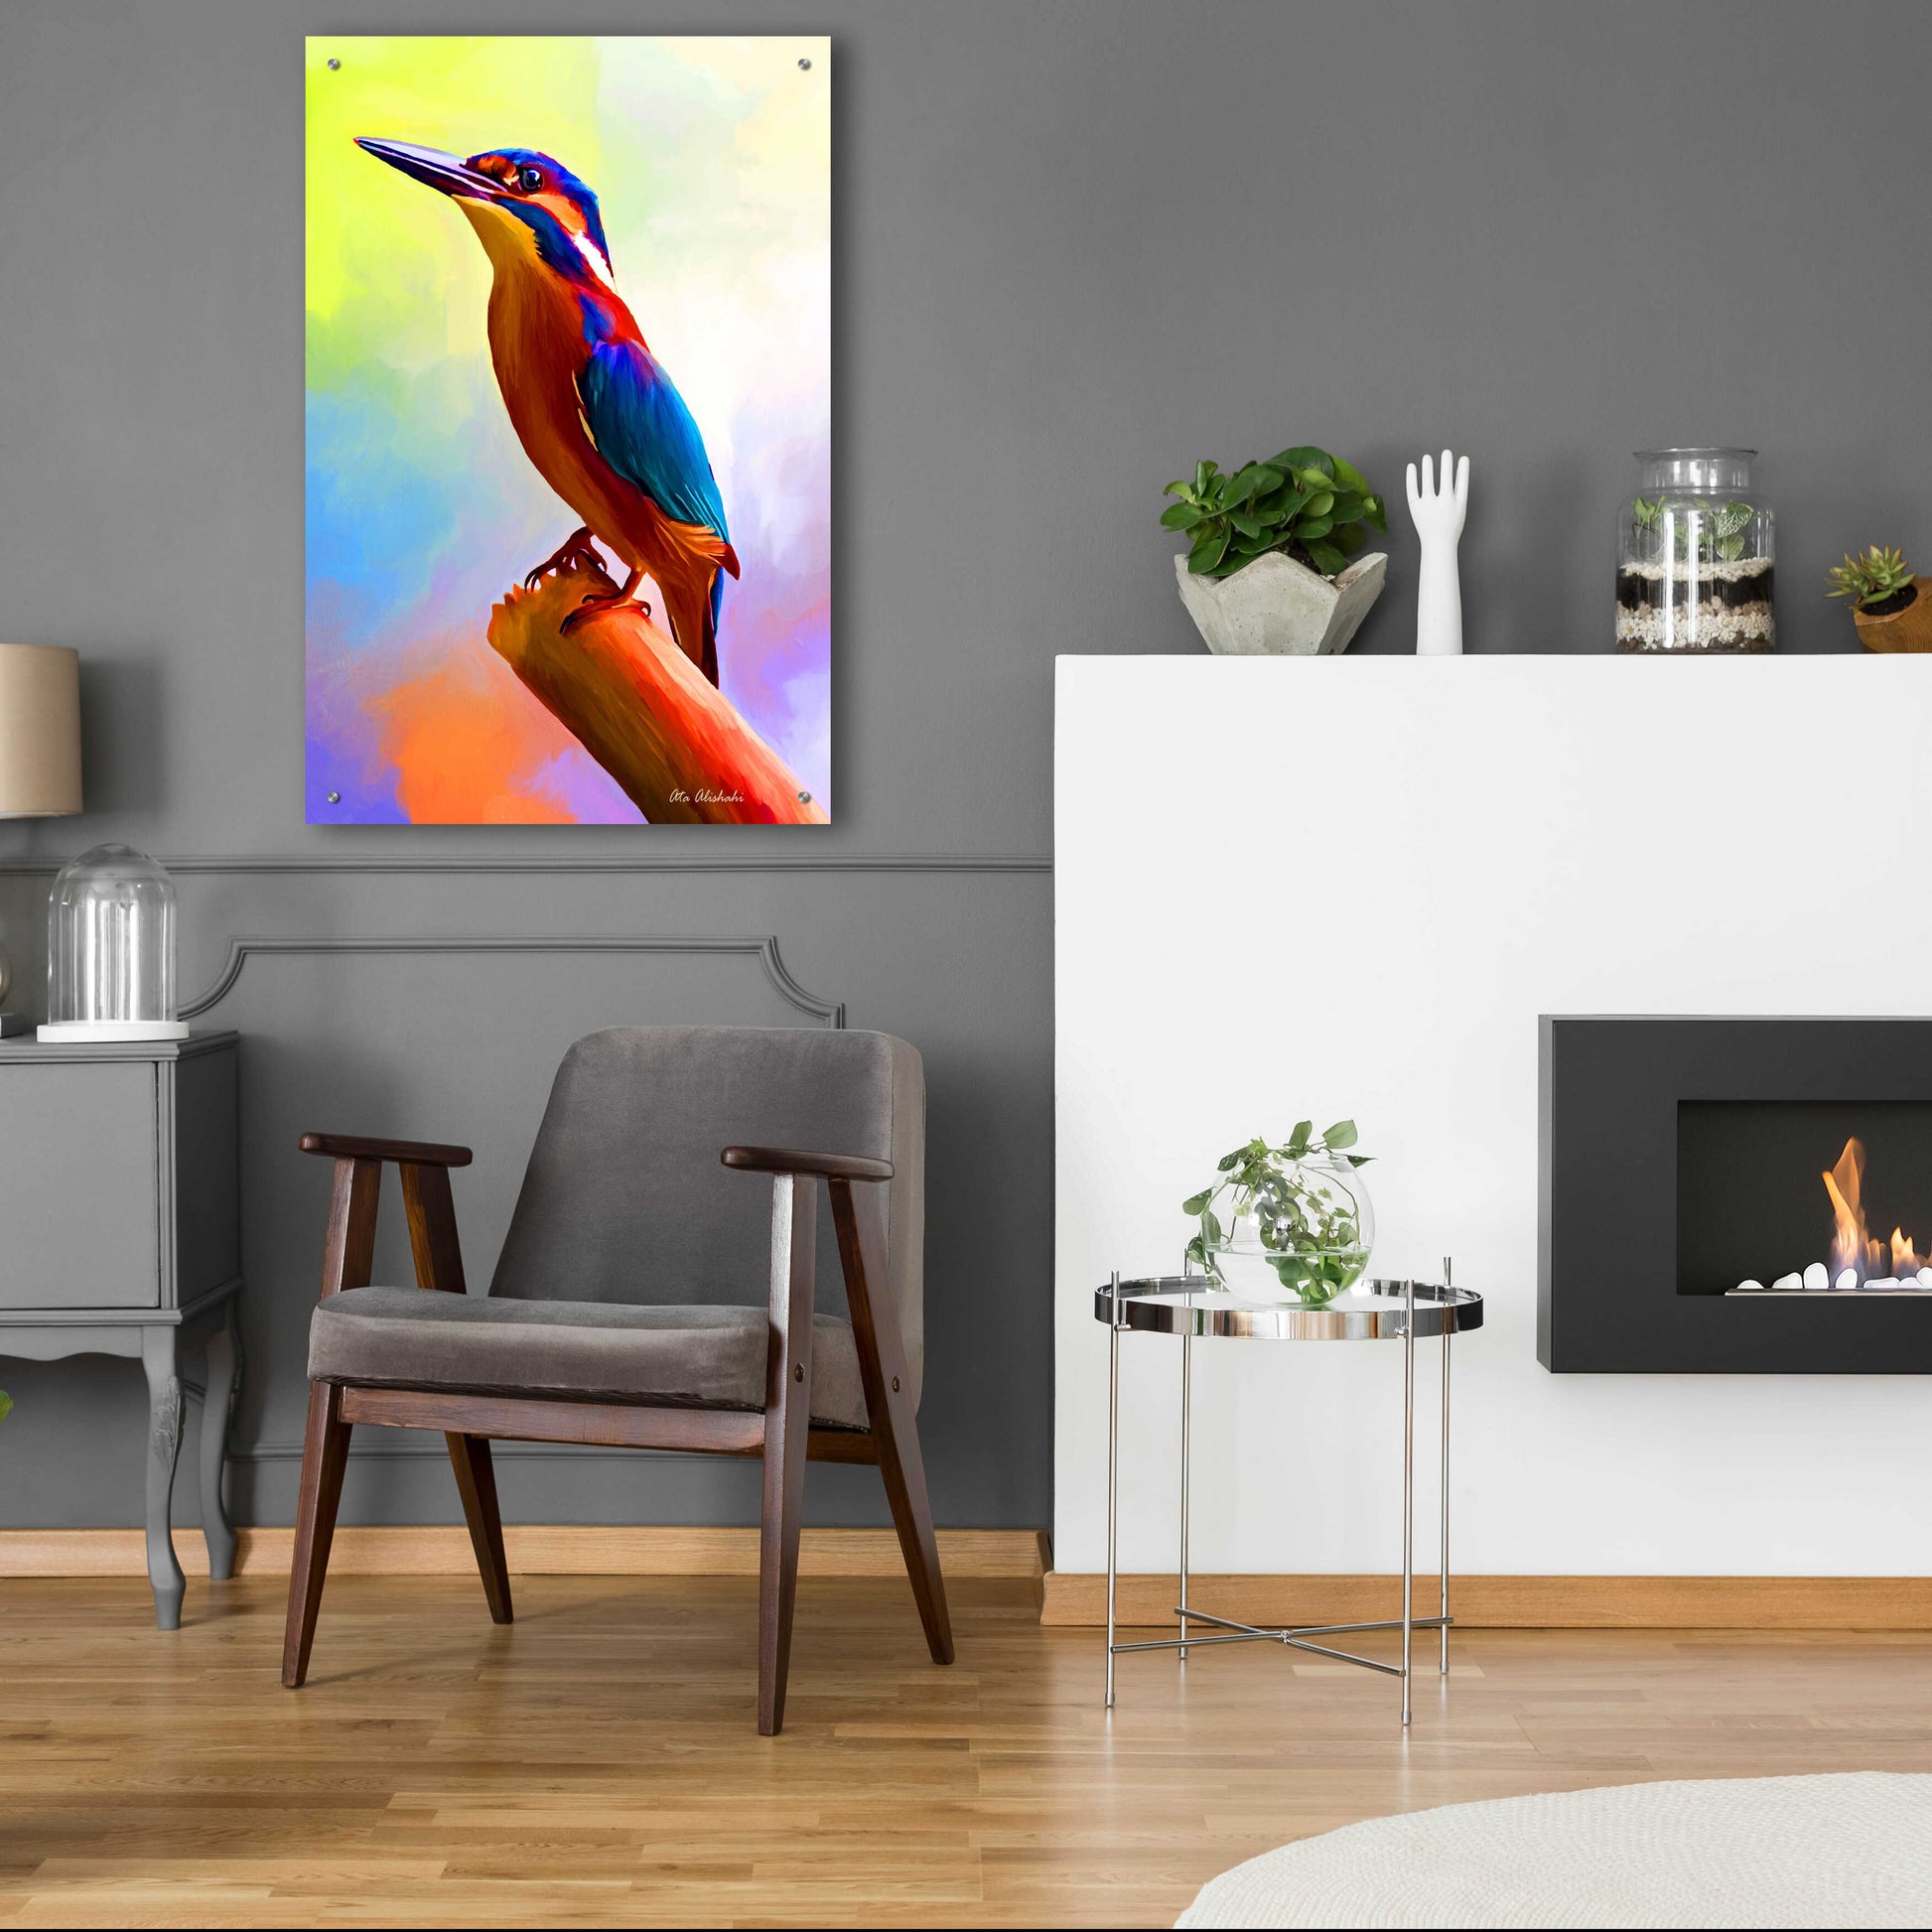 Epic Art 'Tiny Bird' by Ata Alishahi, Acrylic Glass Wall Art,24x36